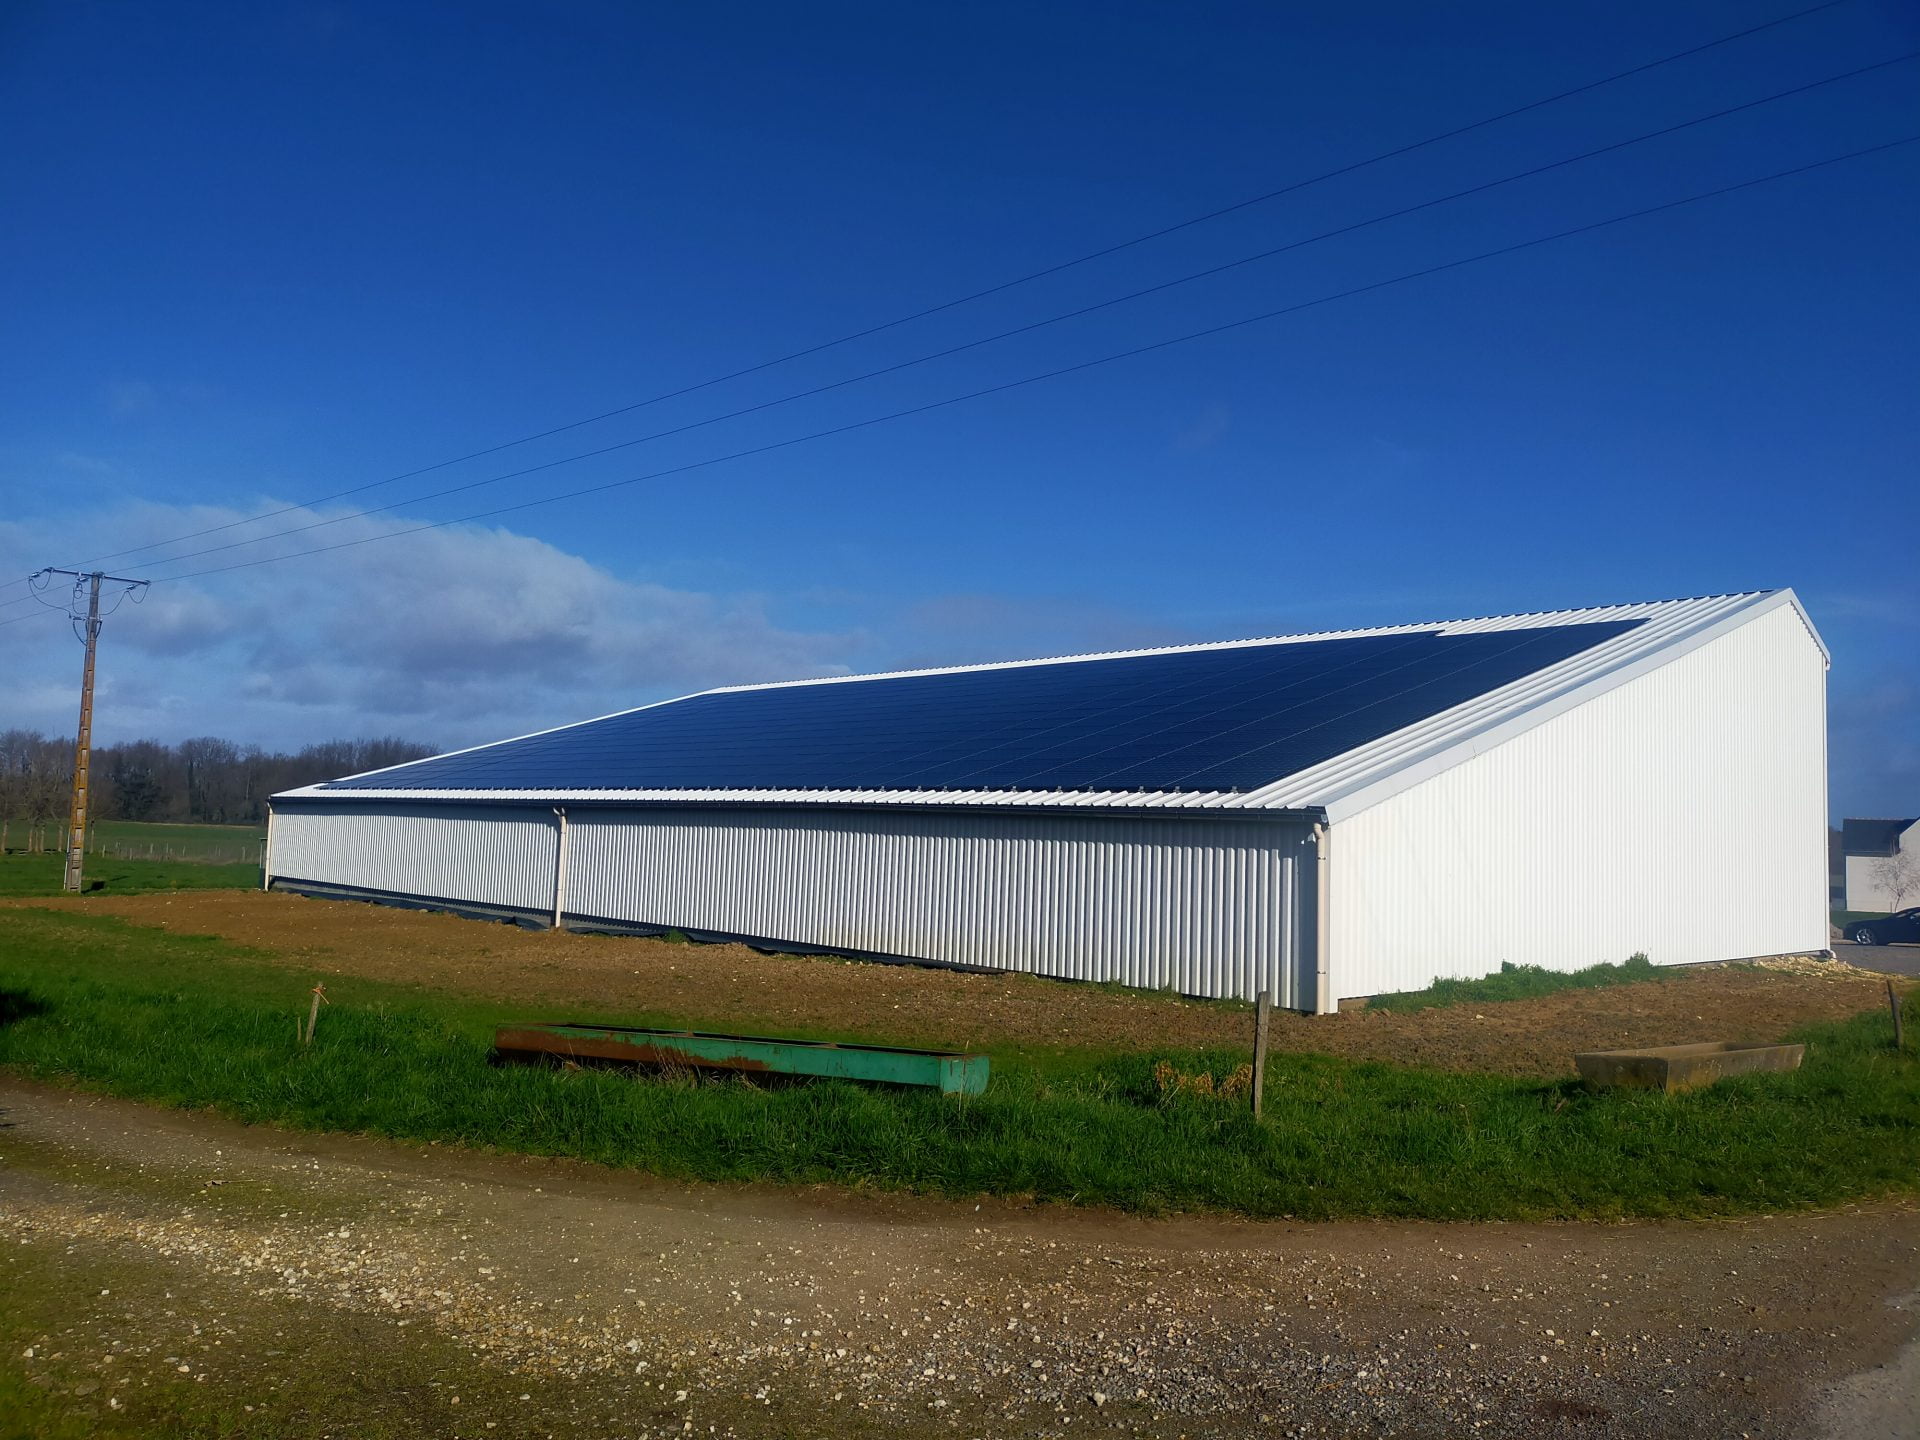 https://batiment-gratuit.fr/wp-content/uploads/2022/09/hangar-agricole-solaire.jpg